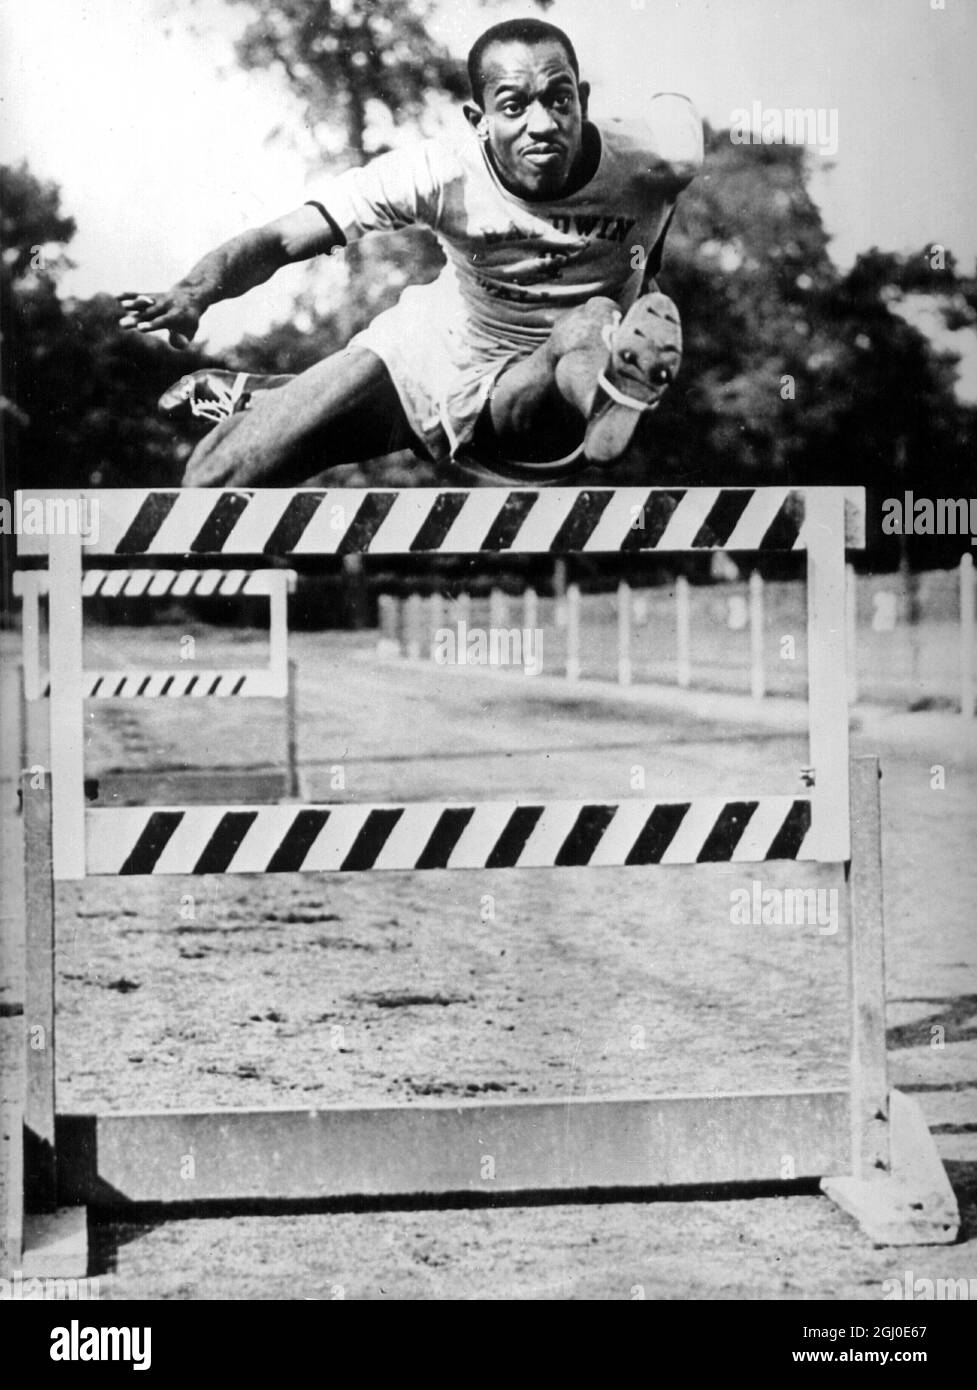 Original Caption Harrison Dillard, la striscia di ebano del Baldwin Wallace College, che ha abbattuto gli ostacoli alti 120 metri, vincendo il record mondiale. Qui è lui formazione per le Olimpiadi. 30 aprile 1948 Foto Stock